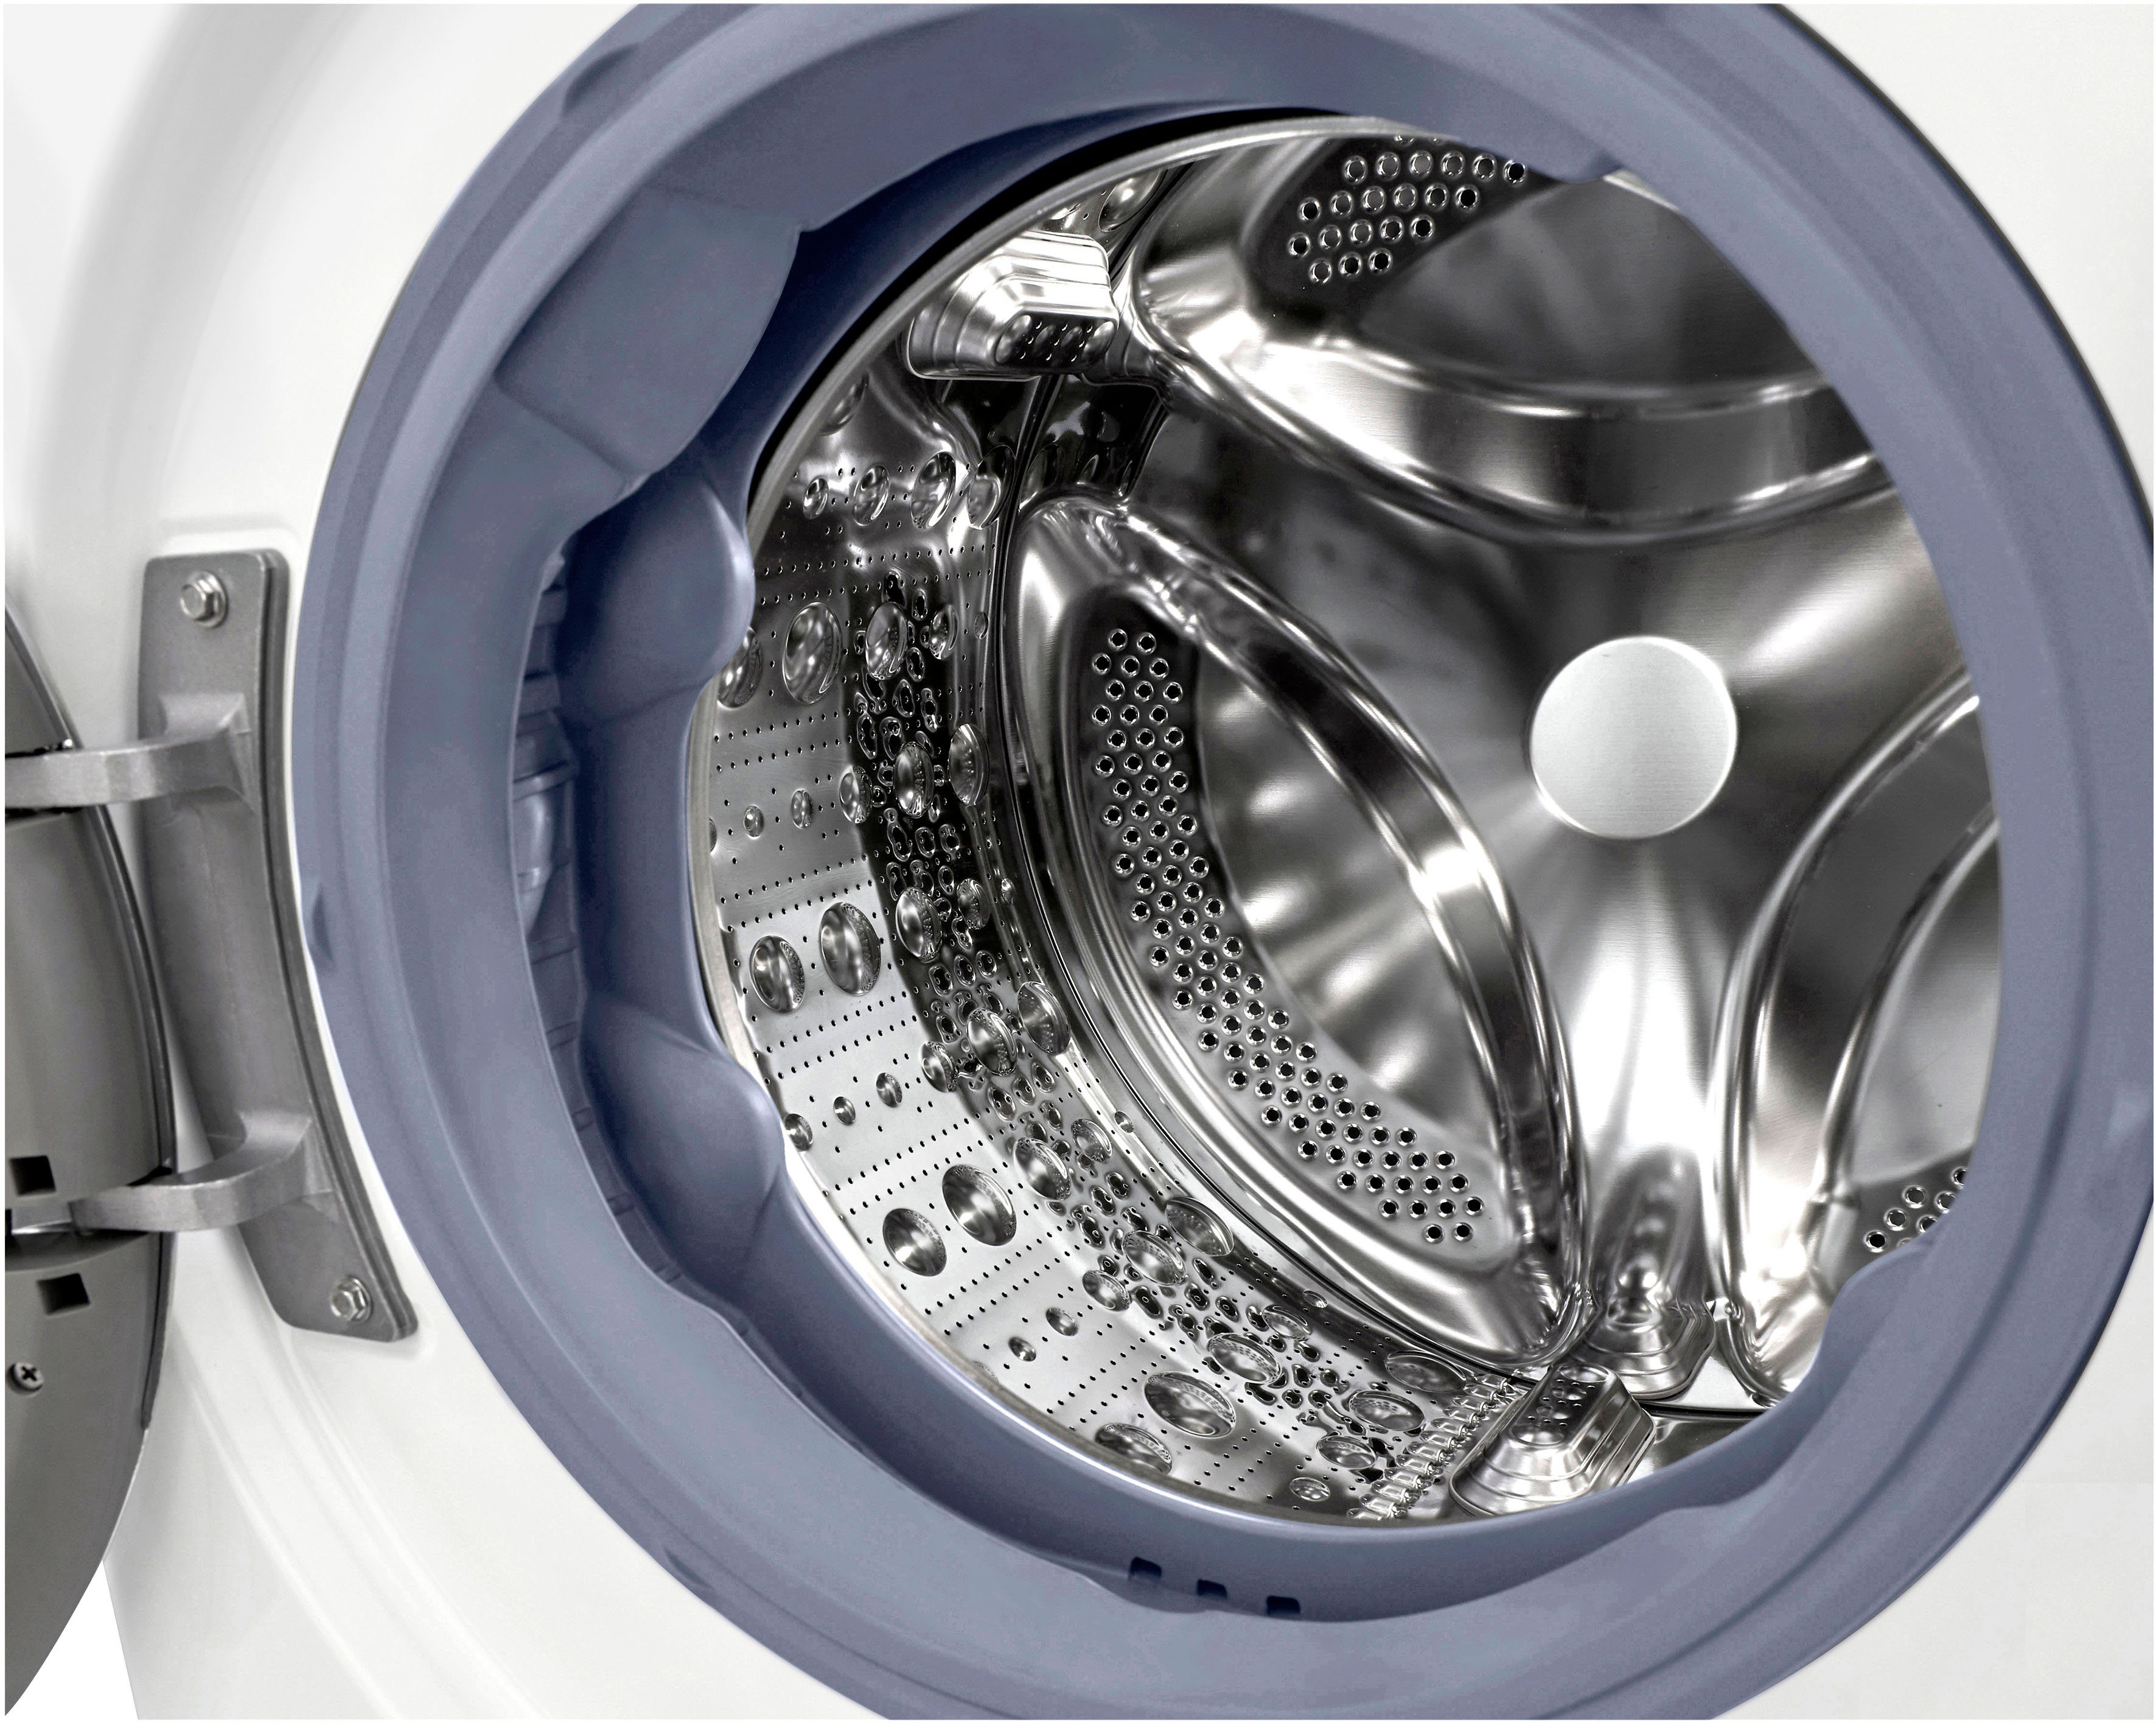 nur Waschmaschine 39 U/min, Waschen 1600 9 - F6WV709P1, kg, in LG Minuten TurboWash®